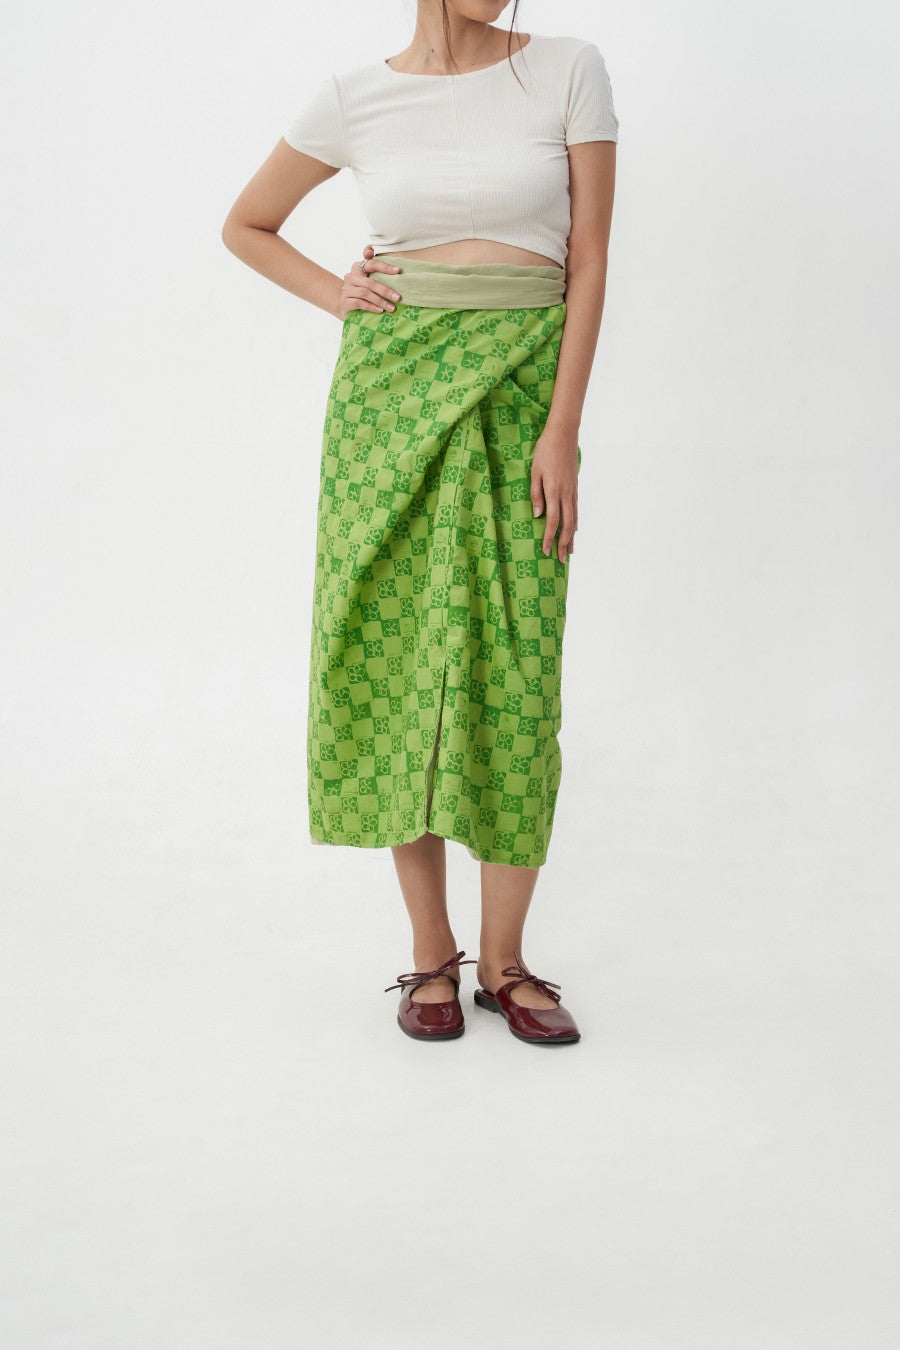 Kuka Wrap Skirt 2 in 1 Green - Kurantaka